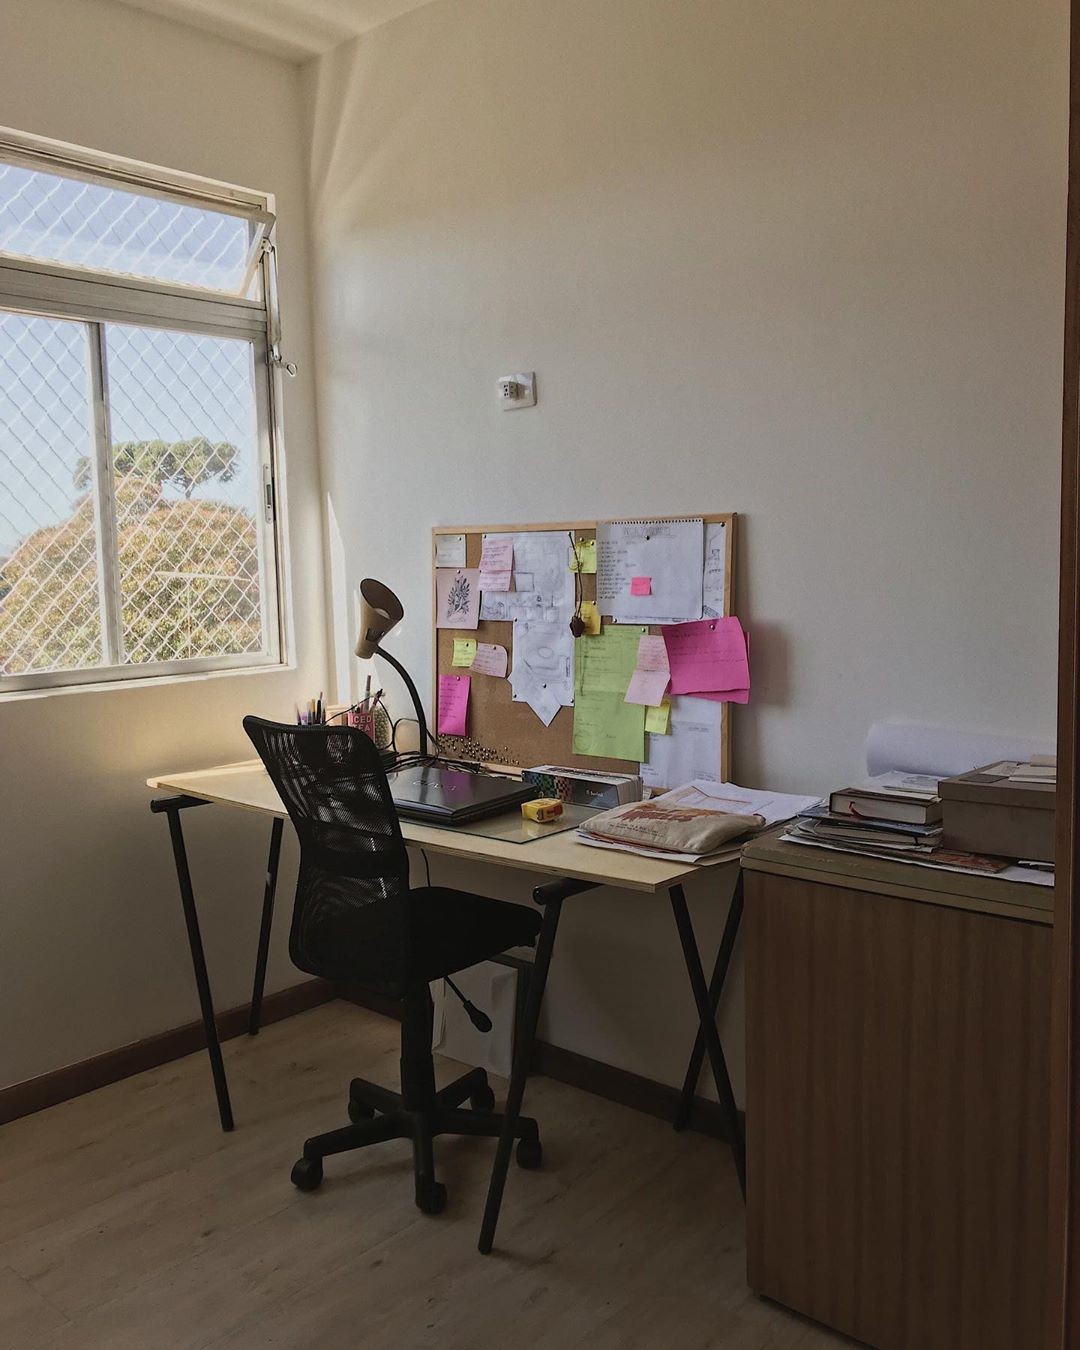 Décor do dia: home office com parede geométrica e plantas (Foto: Instagram/@brugalliano)